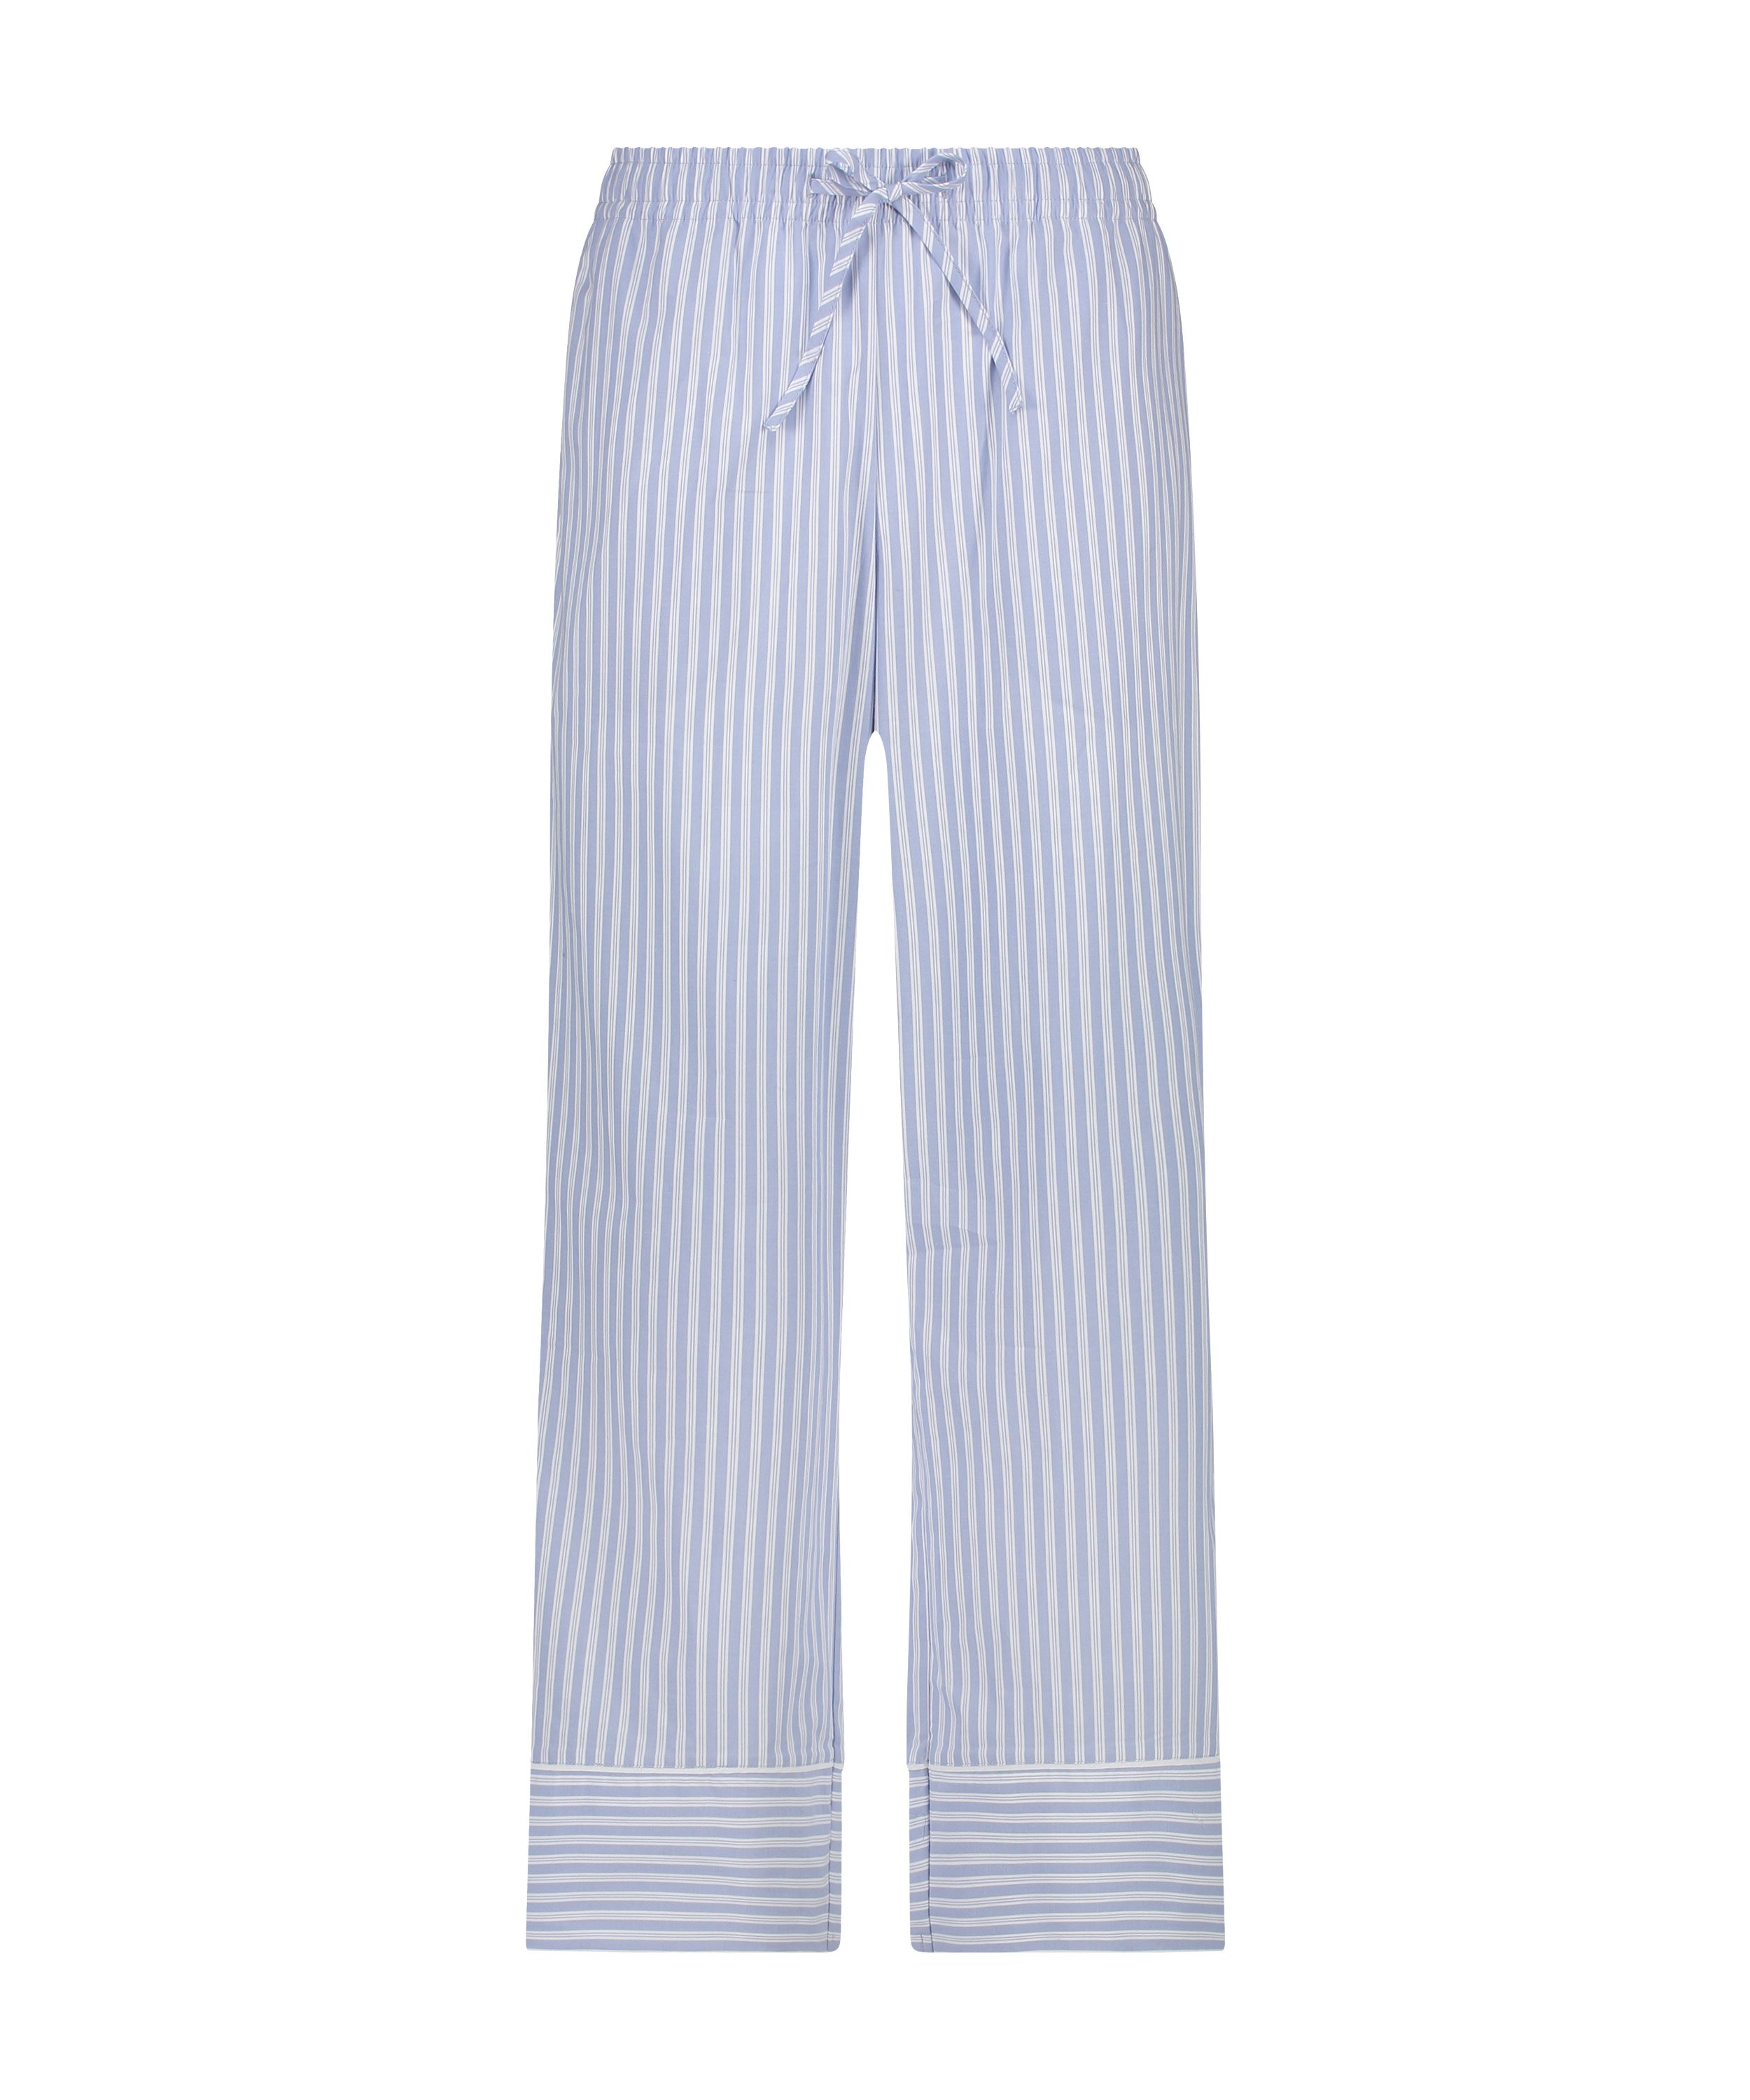 Pyjamabukserr Stripy, Blå, main